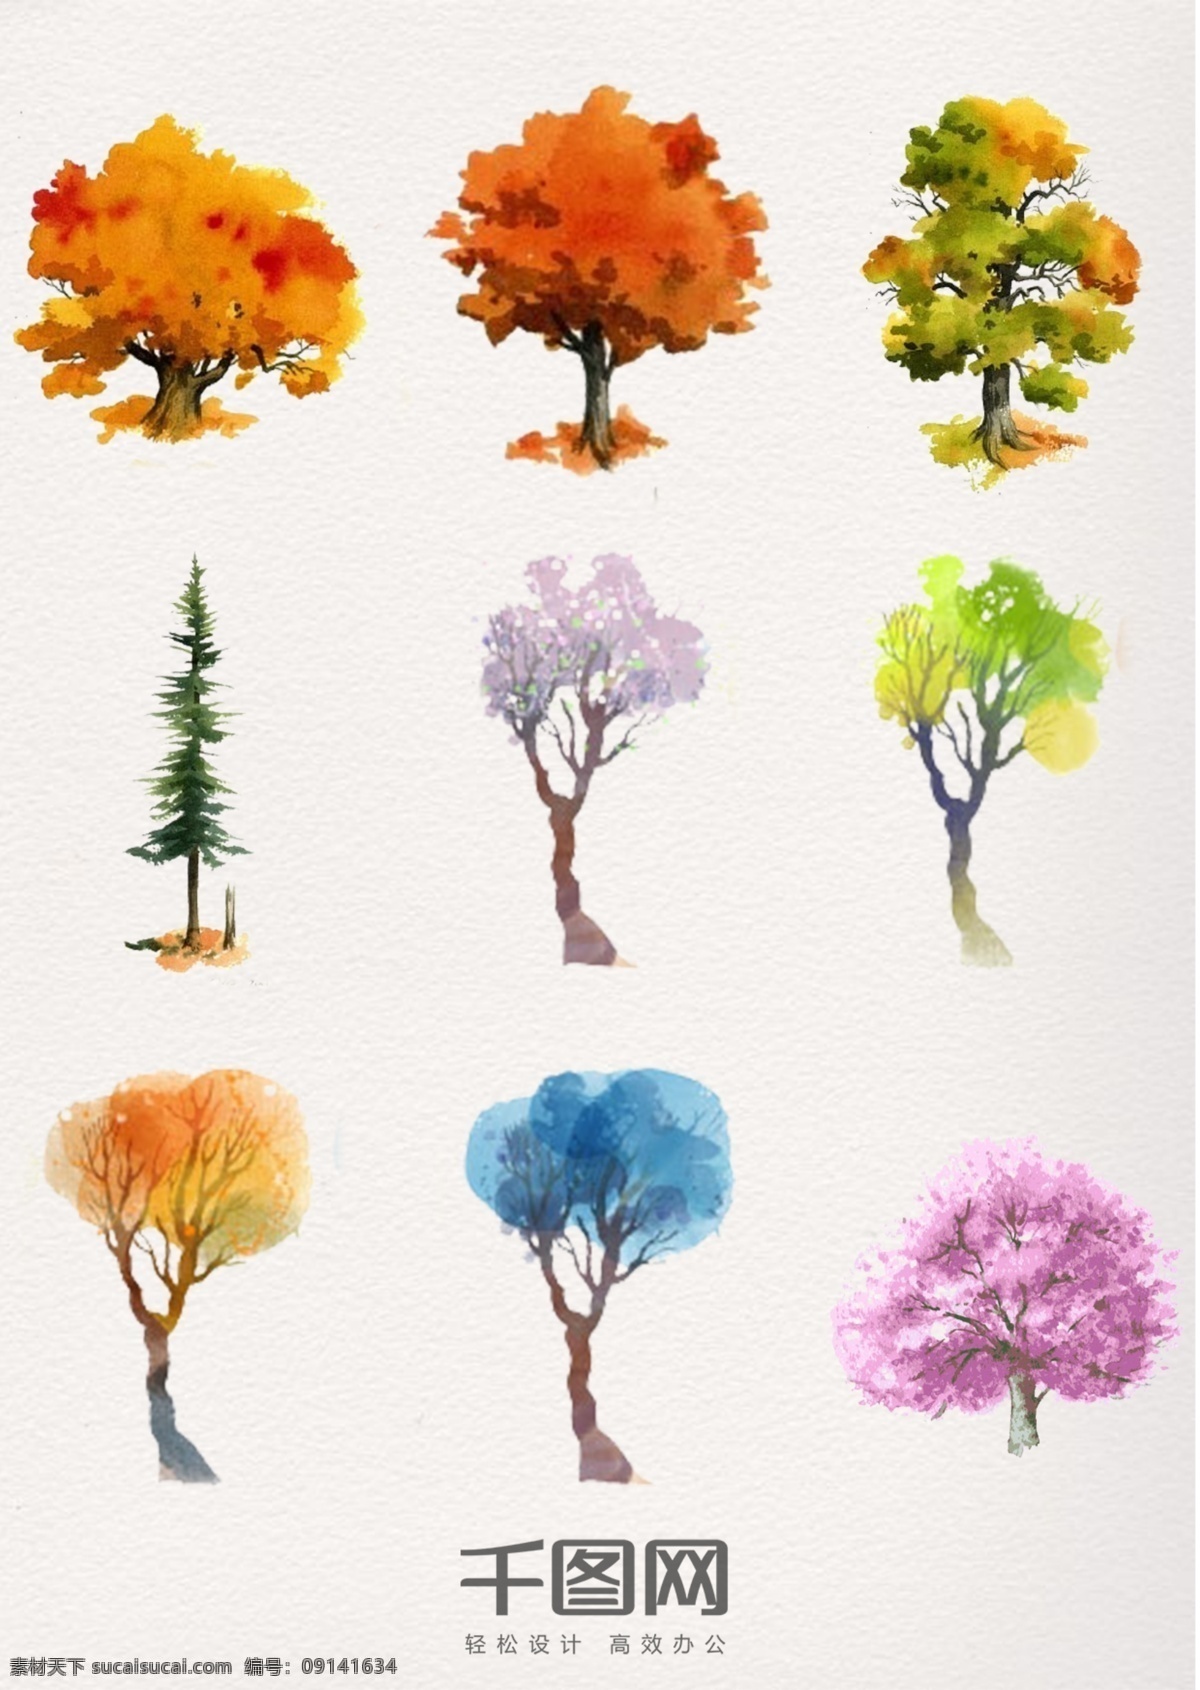 组 梦幻 色彩 水彩 植物 树木 水彩植物 森林 清新 唯美 海报素材 手绘 插画 精美